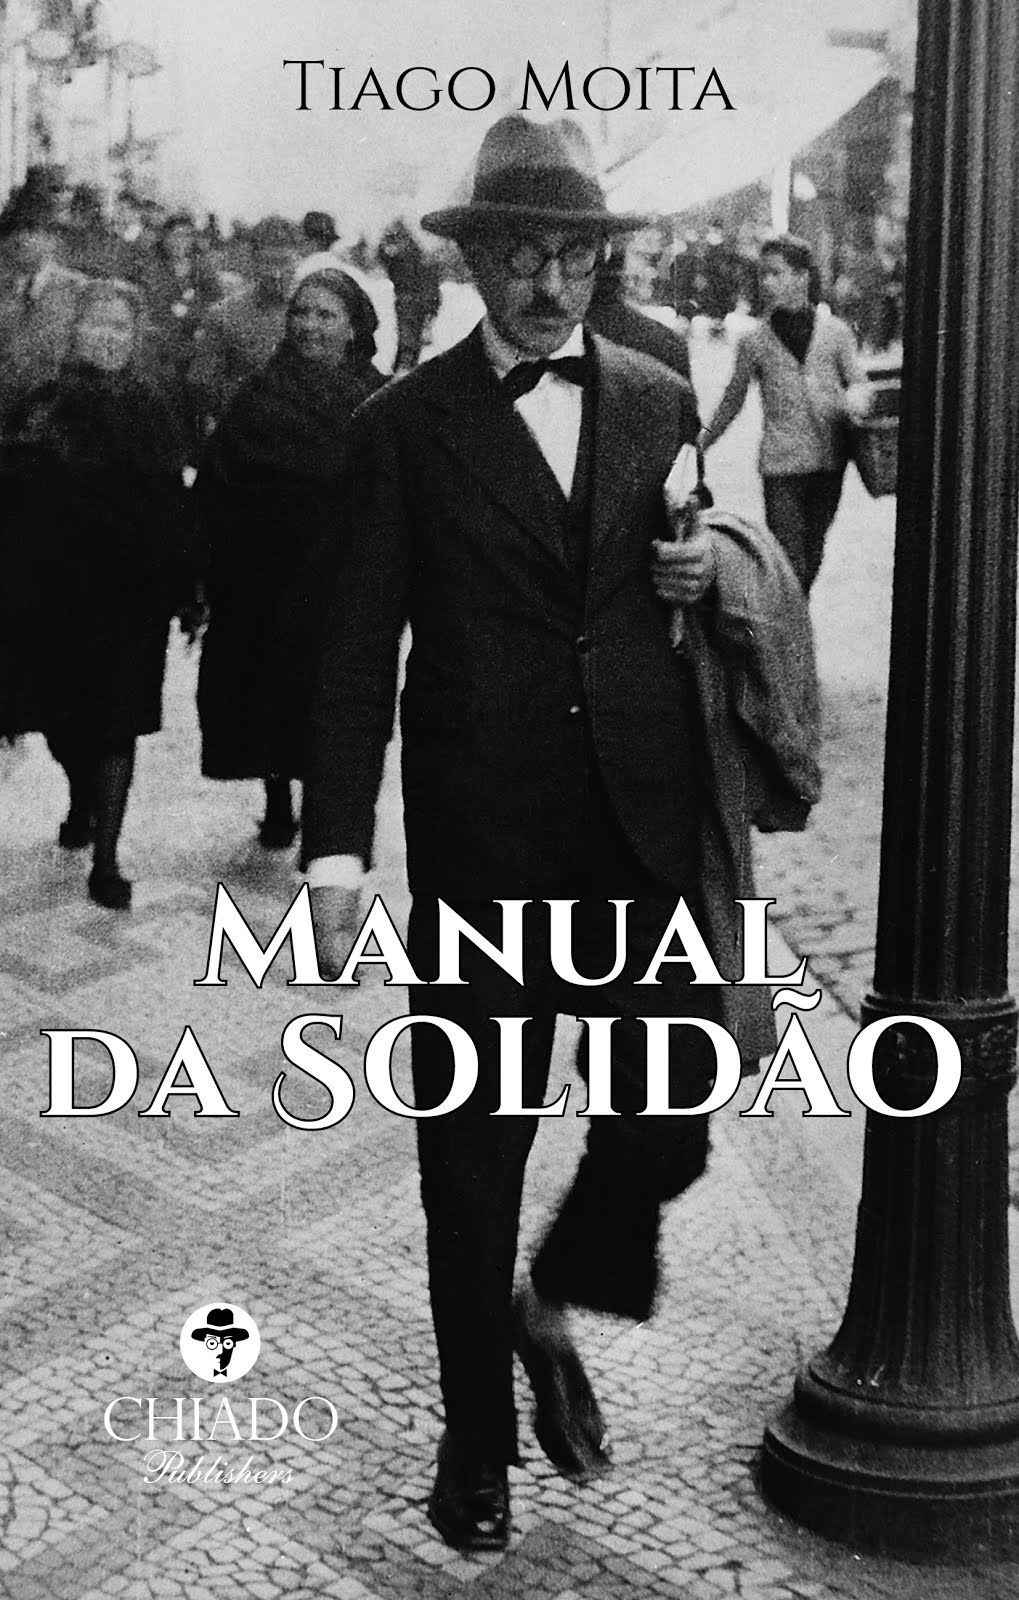 "MANUAL DA SOLIDÃO"